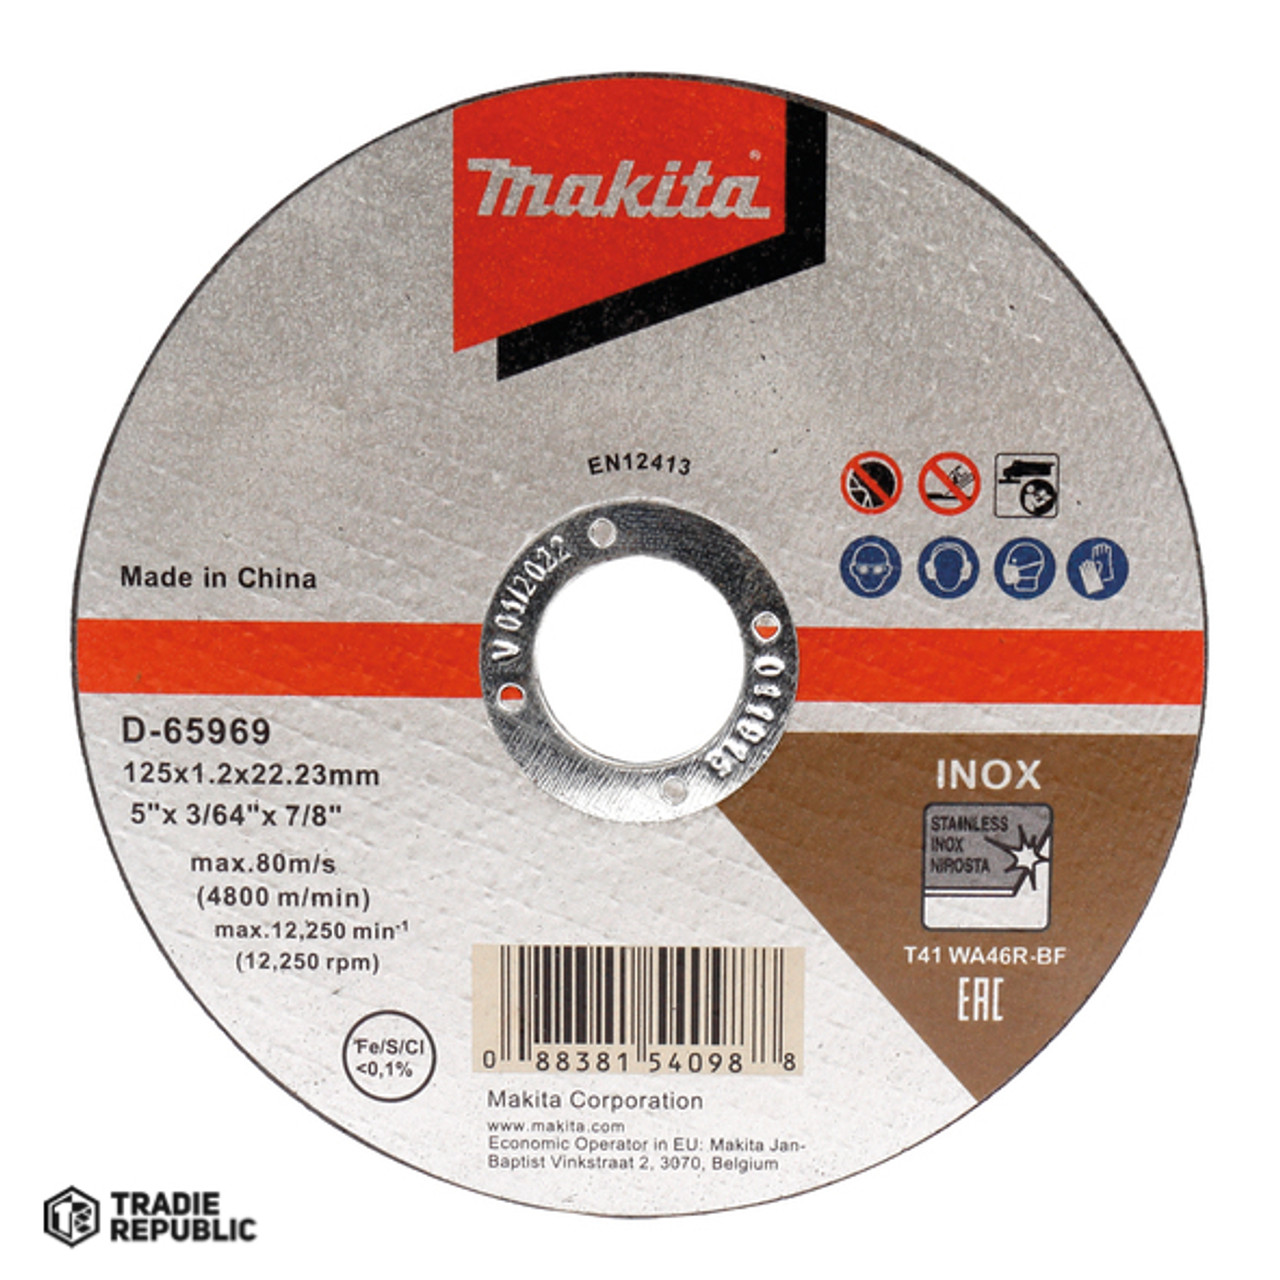 D-65969-10 Makita Cutoff Disc 125x1.2x22mm 10pc